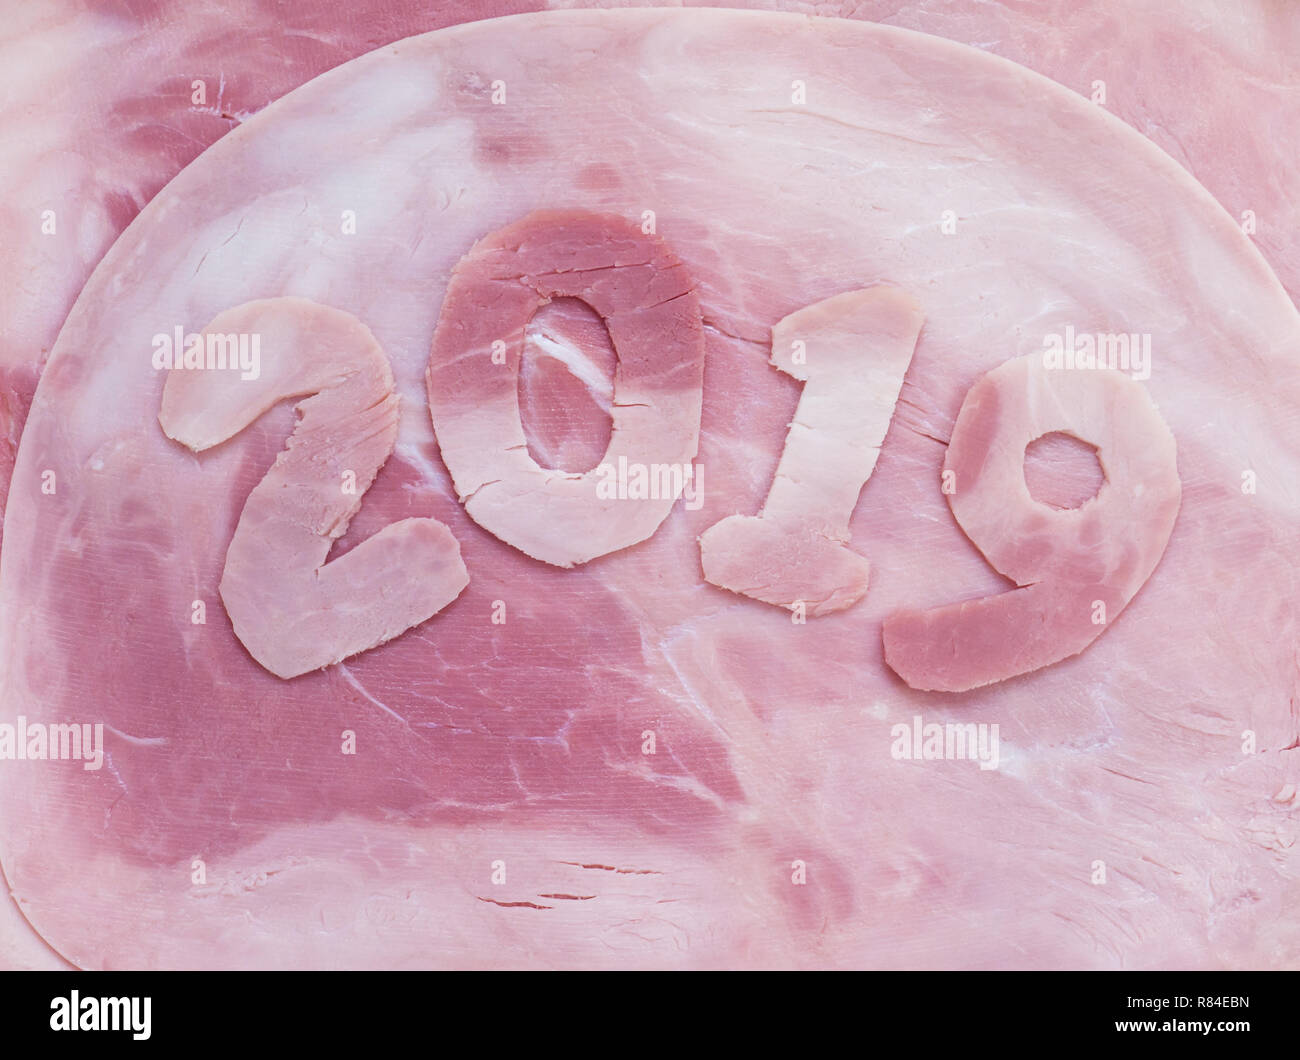 2019 le cifre dell'anno fatto del prosciutto di maiale come un simbolo del nuovo anno. Animali oroscopo cinese. Foto Stock